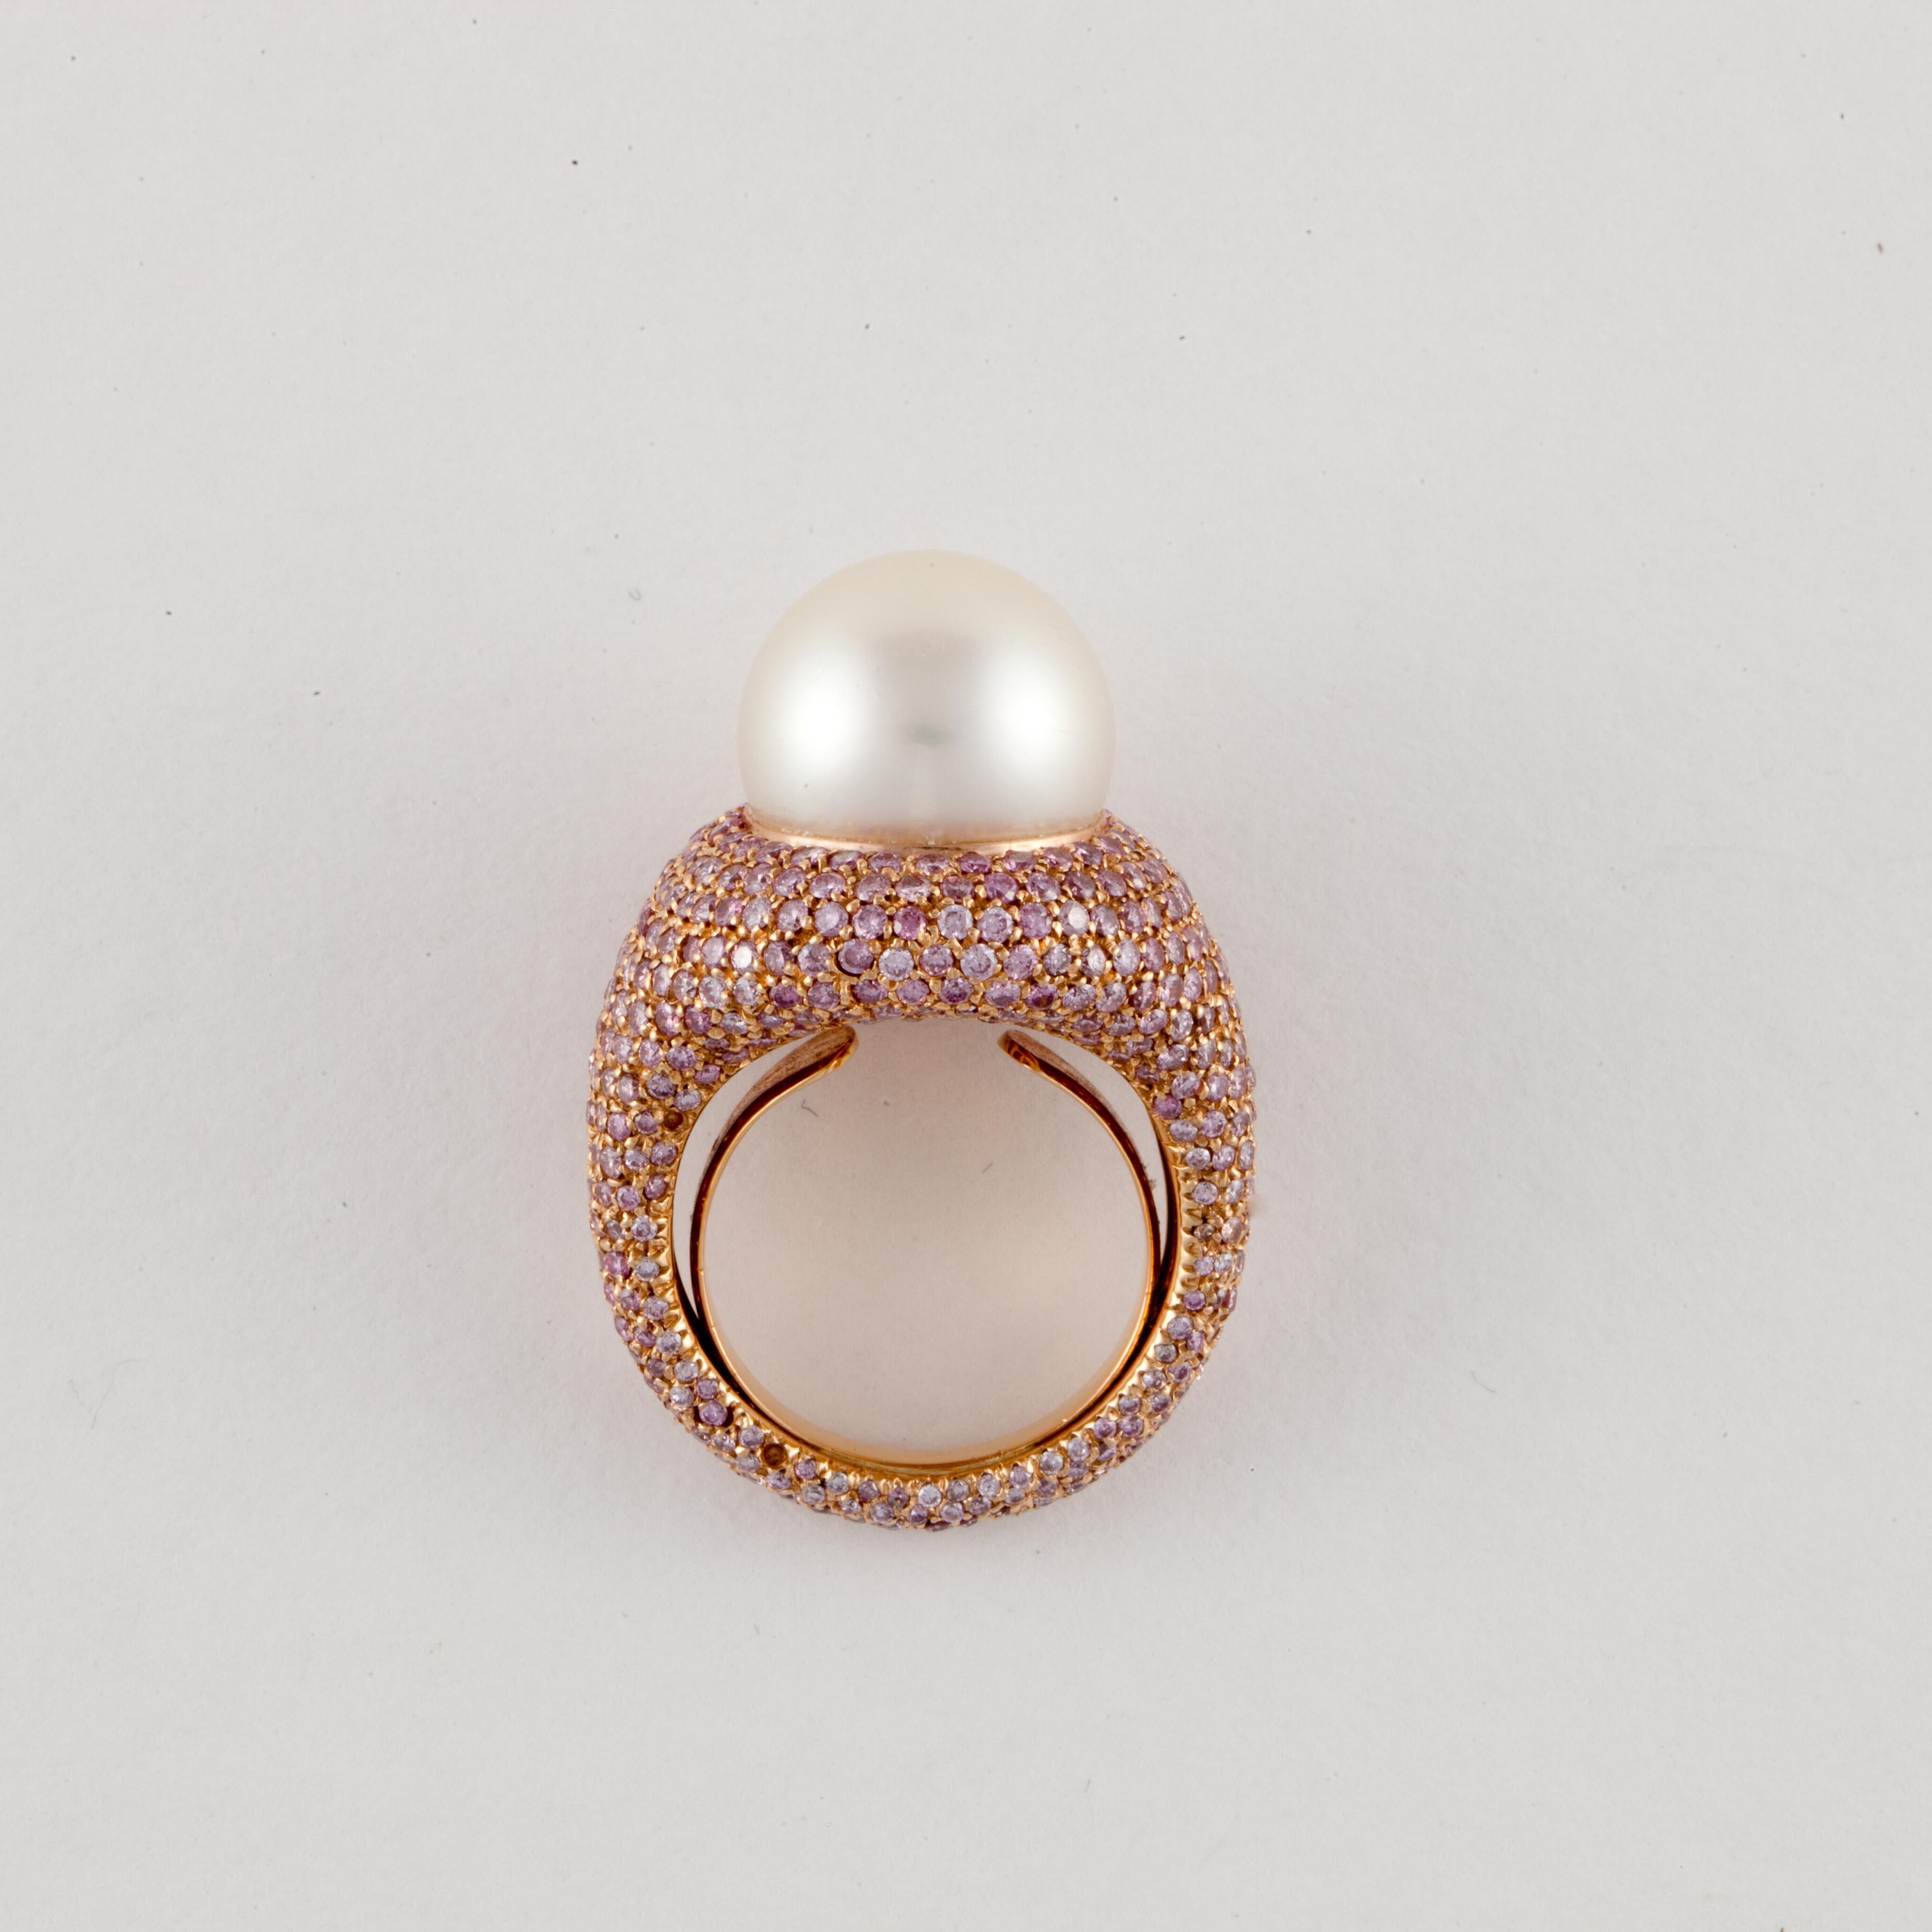 Ring aus 18 Karat Roségold mit einer Südseeperle und runden rosa Diamanten in Pavé-Fassung.  Die Perle ist 14 mm groß.  Der Ring ist mit runden rosafarbenen Diamanten besetzt, die um den ganzen Ring herum verlaufen und insgesamt 4,75 Karat ergeben. 